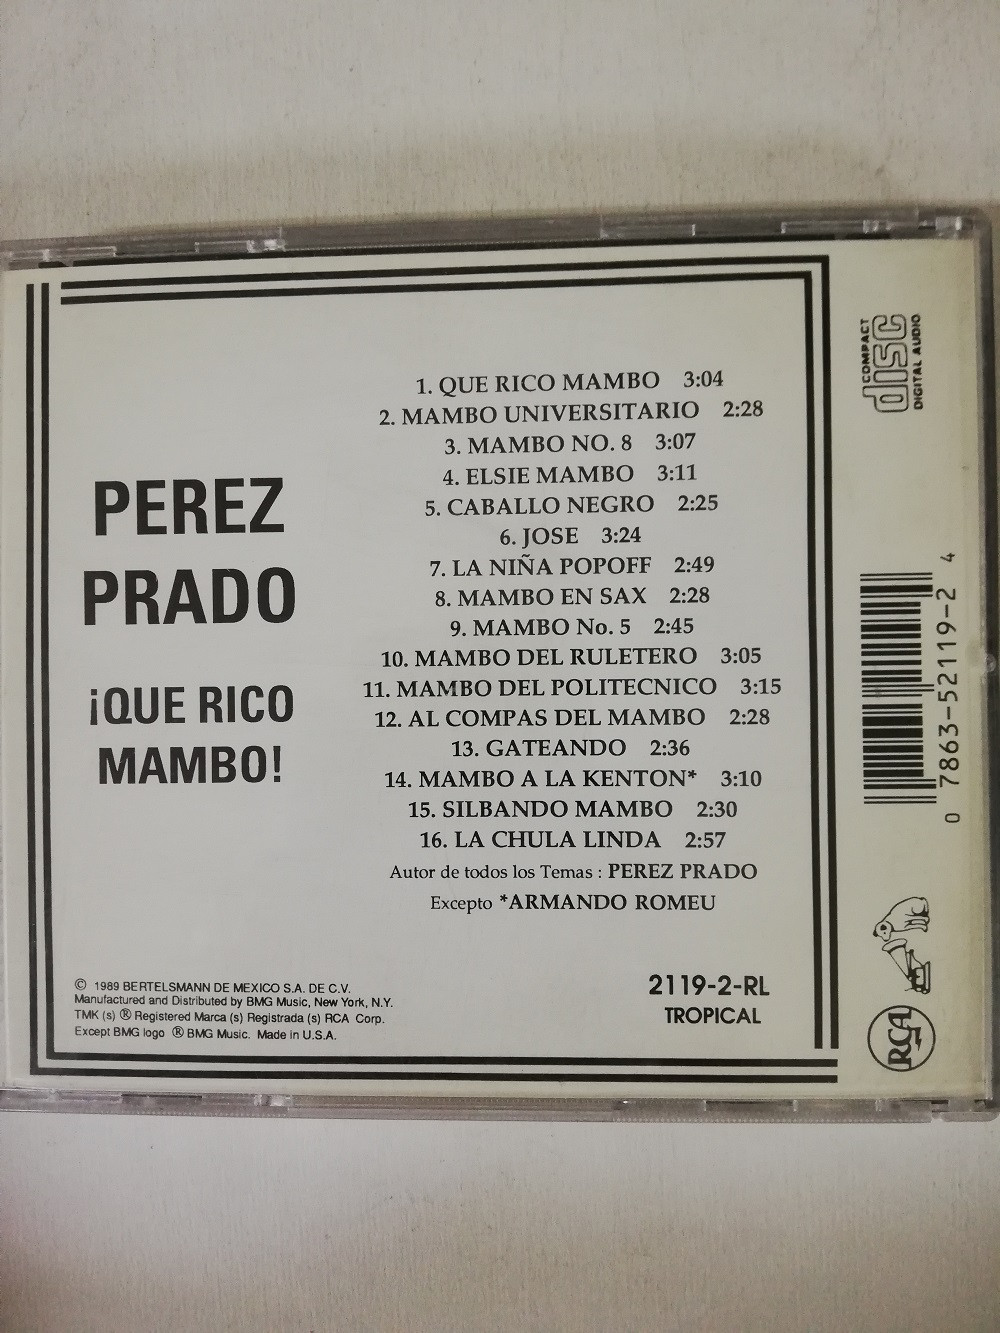 Imagen CD PEREZ PRADO - QUE RICO MAMBO! 2